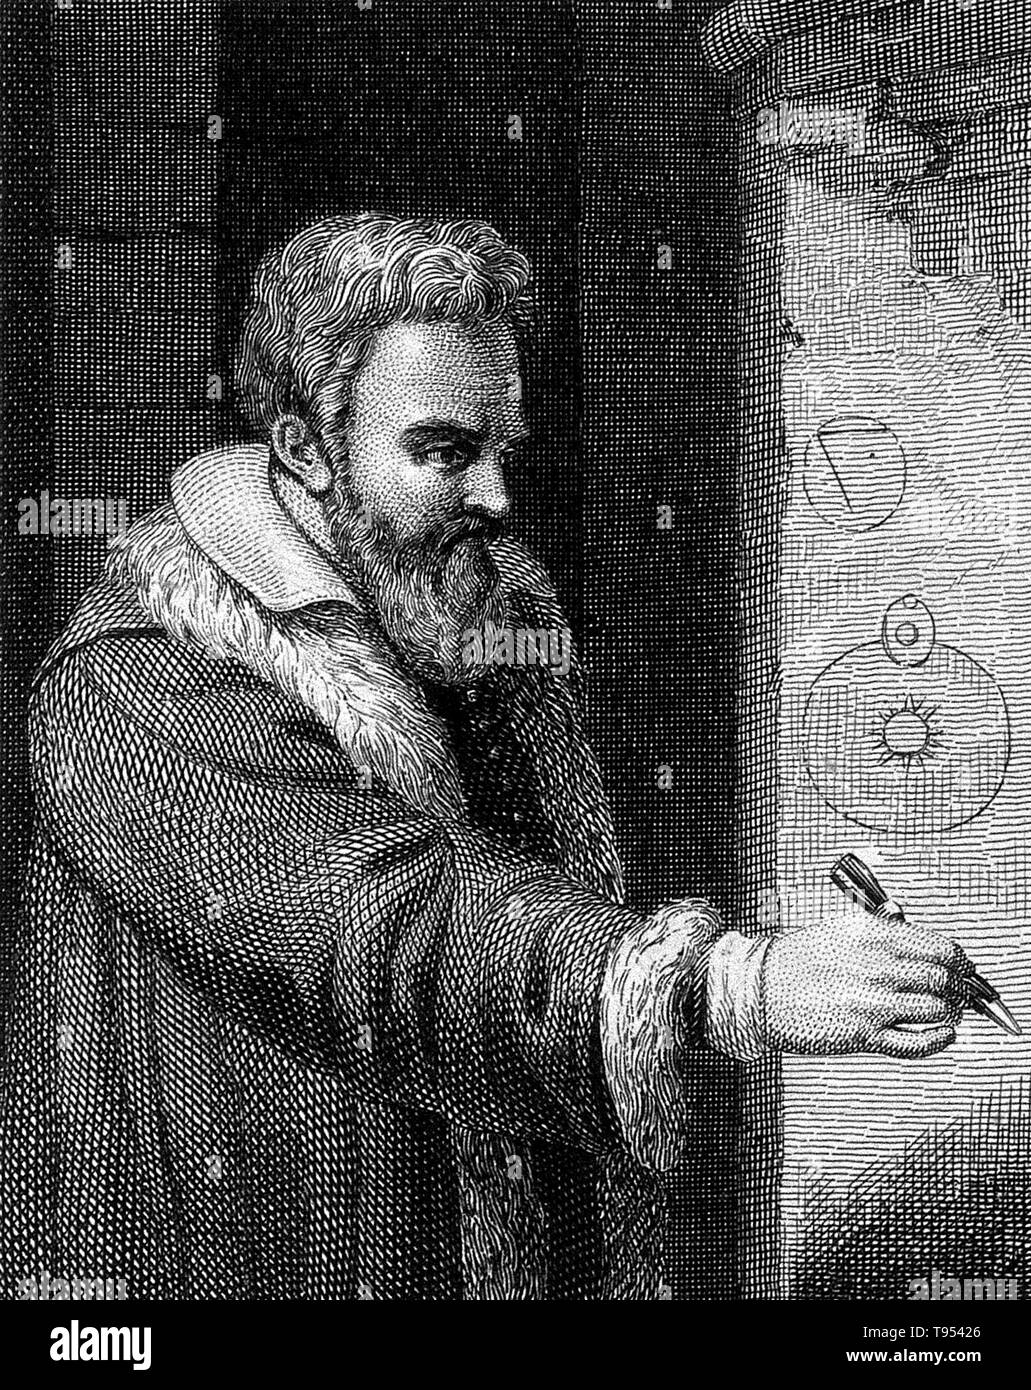 Galileo Galilei (Febbraio 15, 1564 - 8 gennaio 1642) era un fisico italiano, matematico, astronomo e filosofo che ha giocato un ruolo importante nella Rivoluzione Scientifica. I suoi successi includono miglioramenti al telescopio, importanti osservazioni astronomiche e supporto per Copernicanism. Egli ha scoperto le montagne della Luna, i quattro maggiori lune di Giove e numerose stelle dim. Ha studiato il moto di un pendolo e ha scoperto che le altalene hanno un periodo di tempo costante. Foto Stock